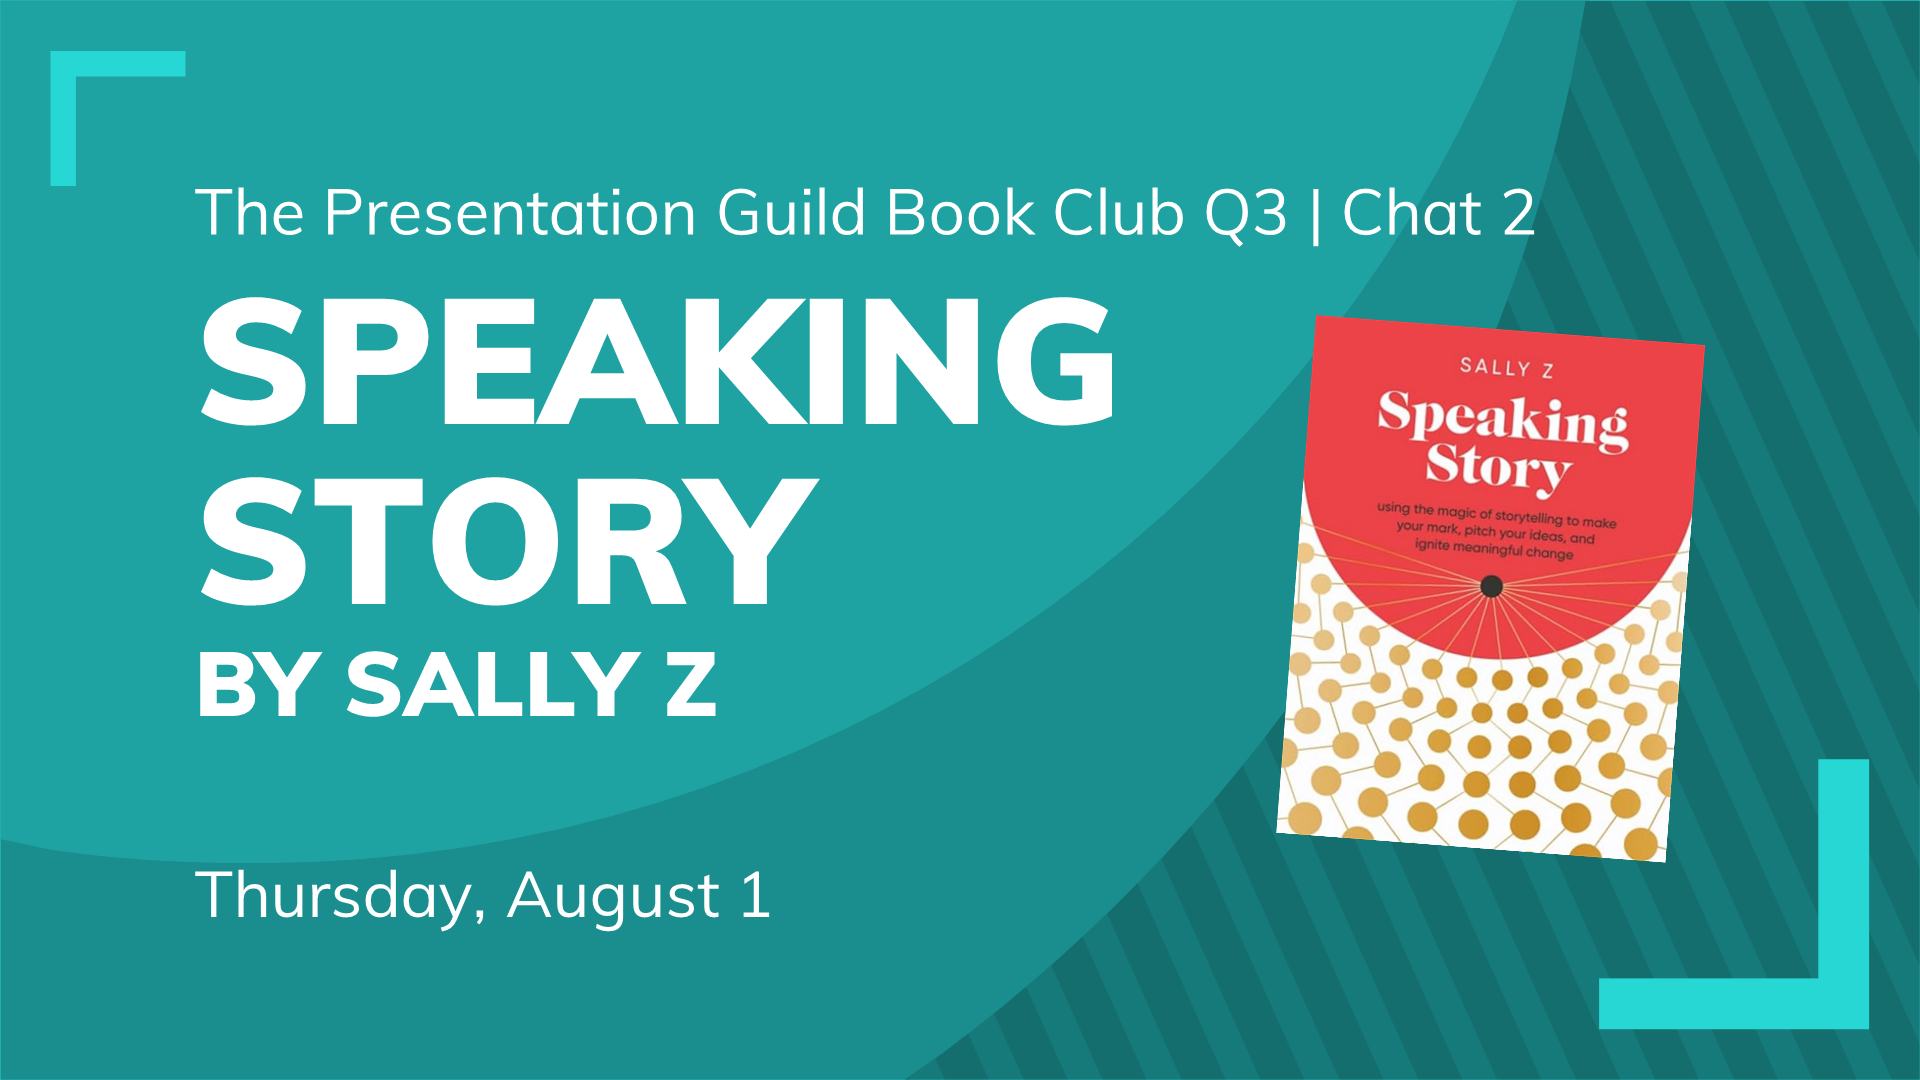 Book Club Q3 #2: Thursday August 1